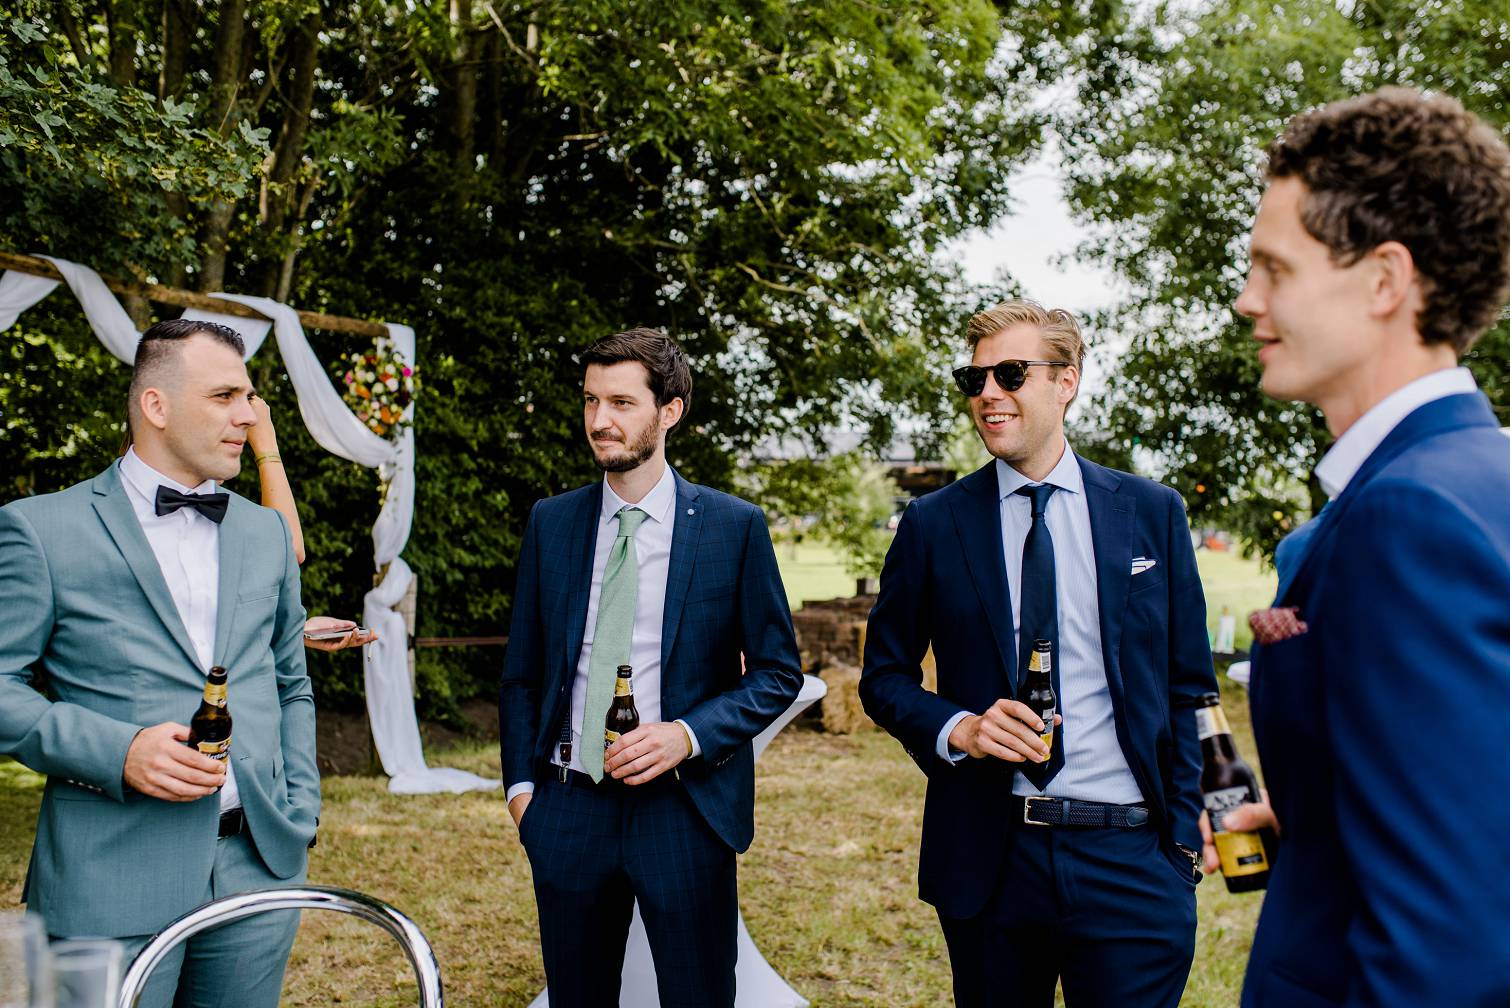 festival bruiloft achtertuin Zwolle - Trouwfotograaf Anouk Wubs - Corona bruiloft